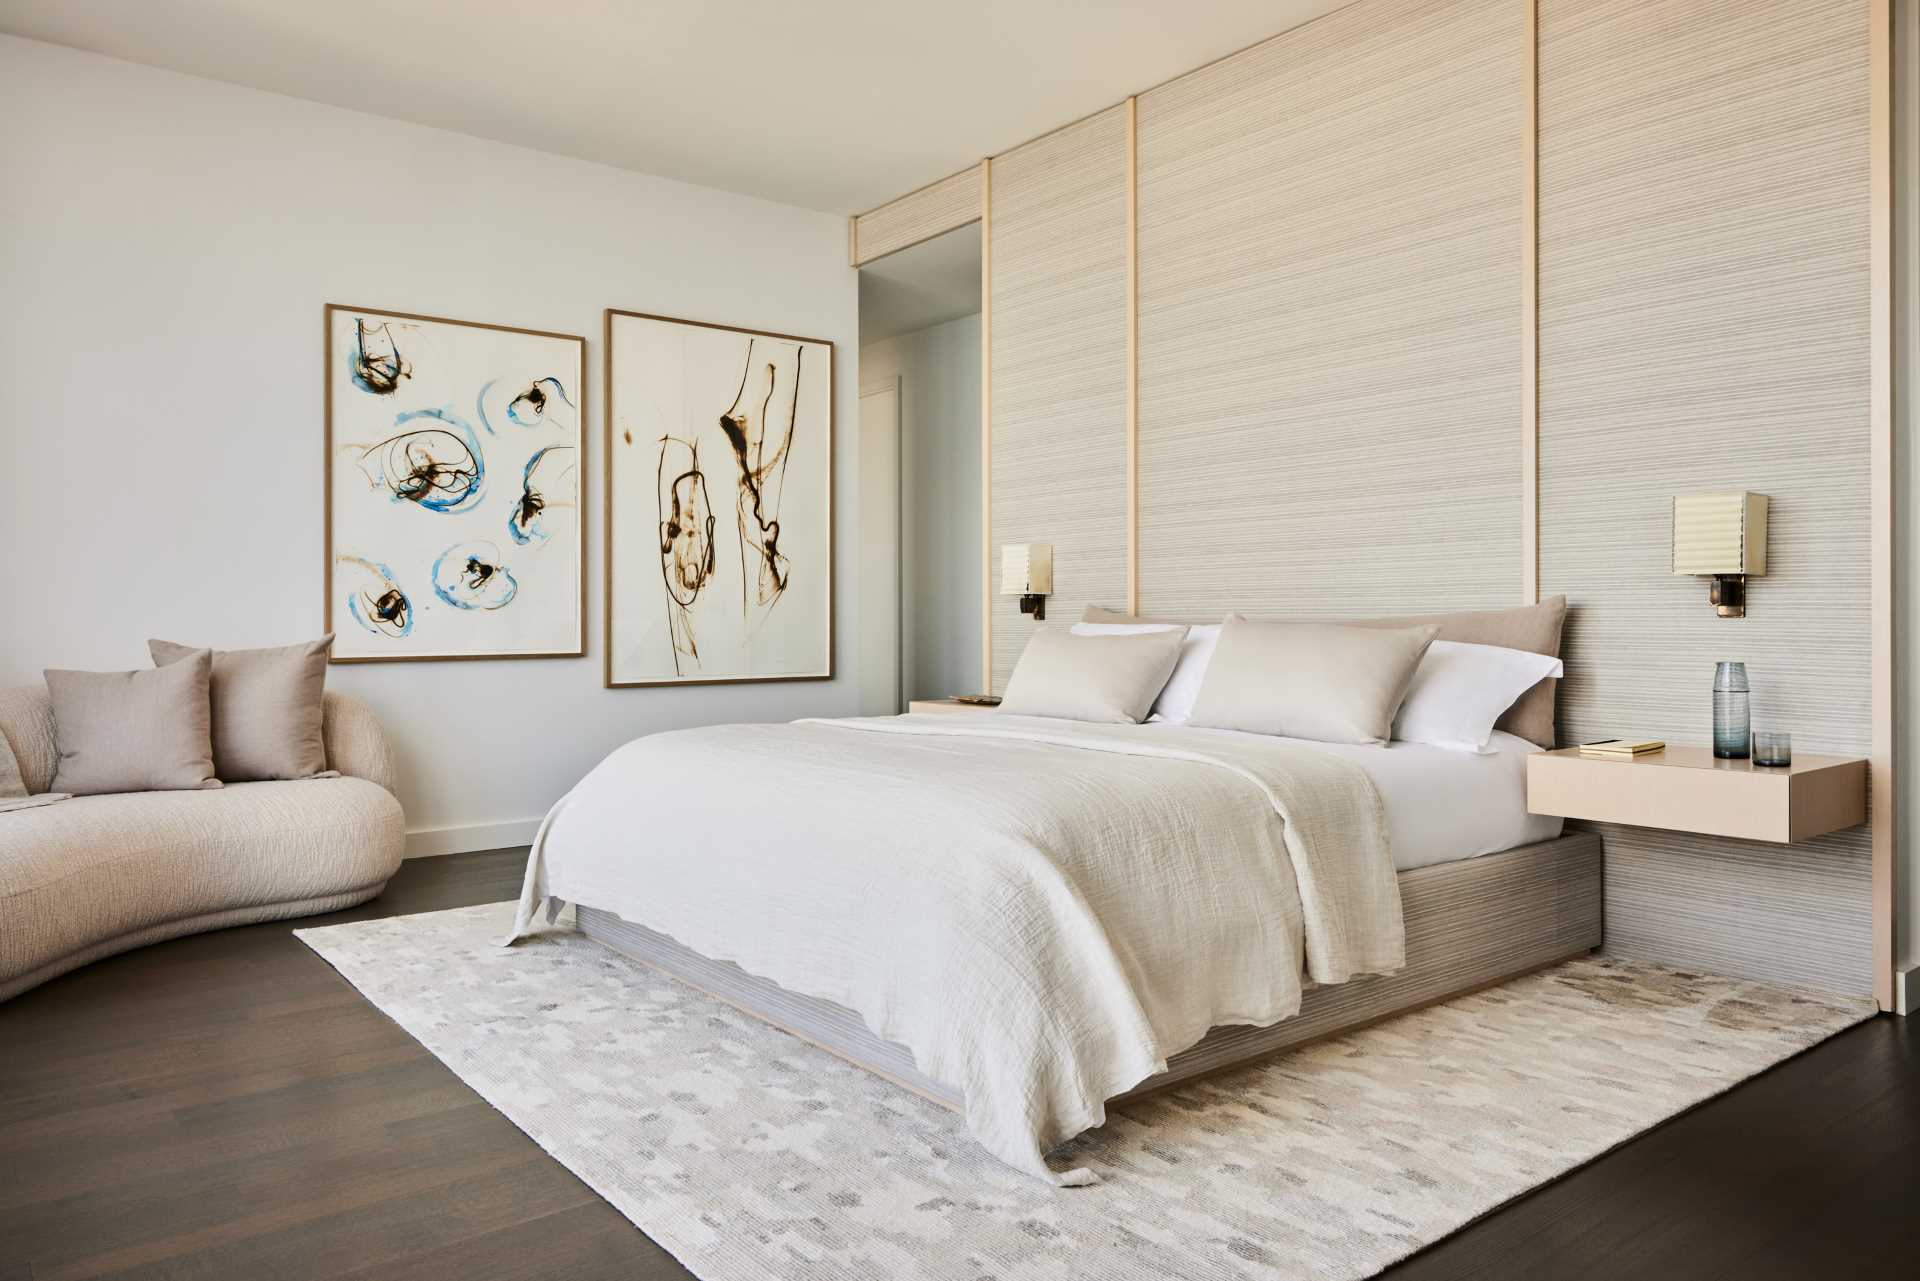 یک اتاق خواب مدرن با پالت رنگ خنثی و ،مت نشیمن کوچک.